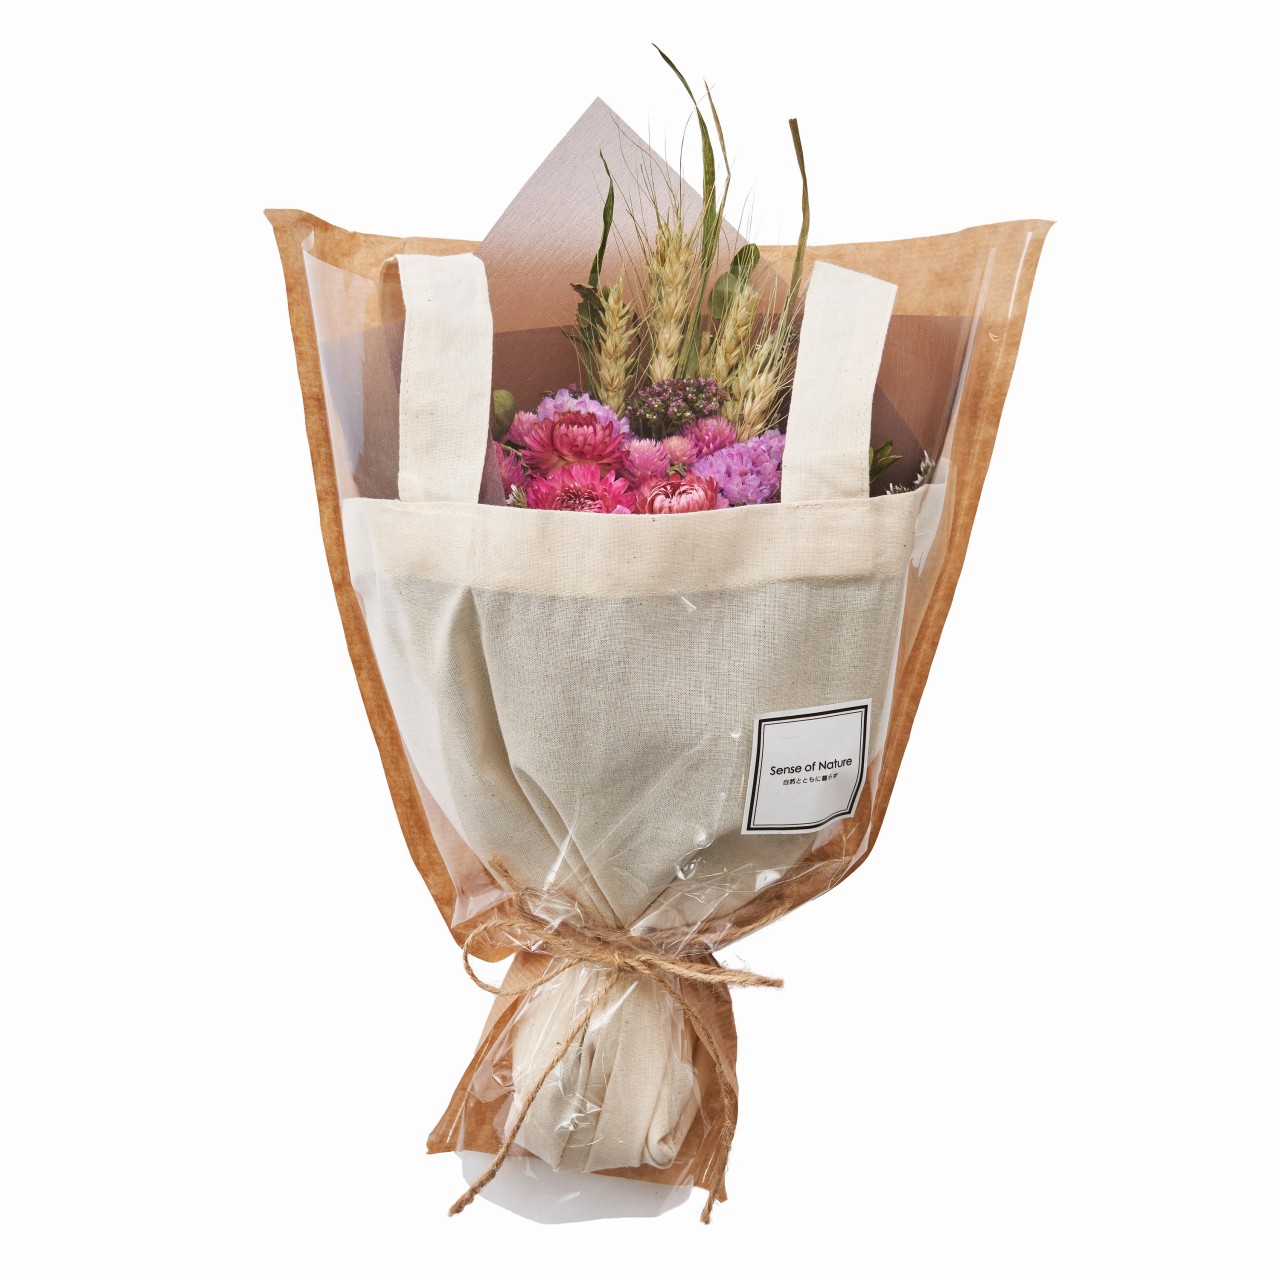 マイフラ 通販 Sense Of Nature 国産ドライフラワーのエコバッグブーケ 大 ピンク アレンジメント フラワーギフト Zd 002 ピンク フラワーアレンジメント キット ギフト 全国にmagiq 花器 花資材などをお届けします